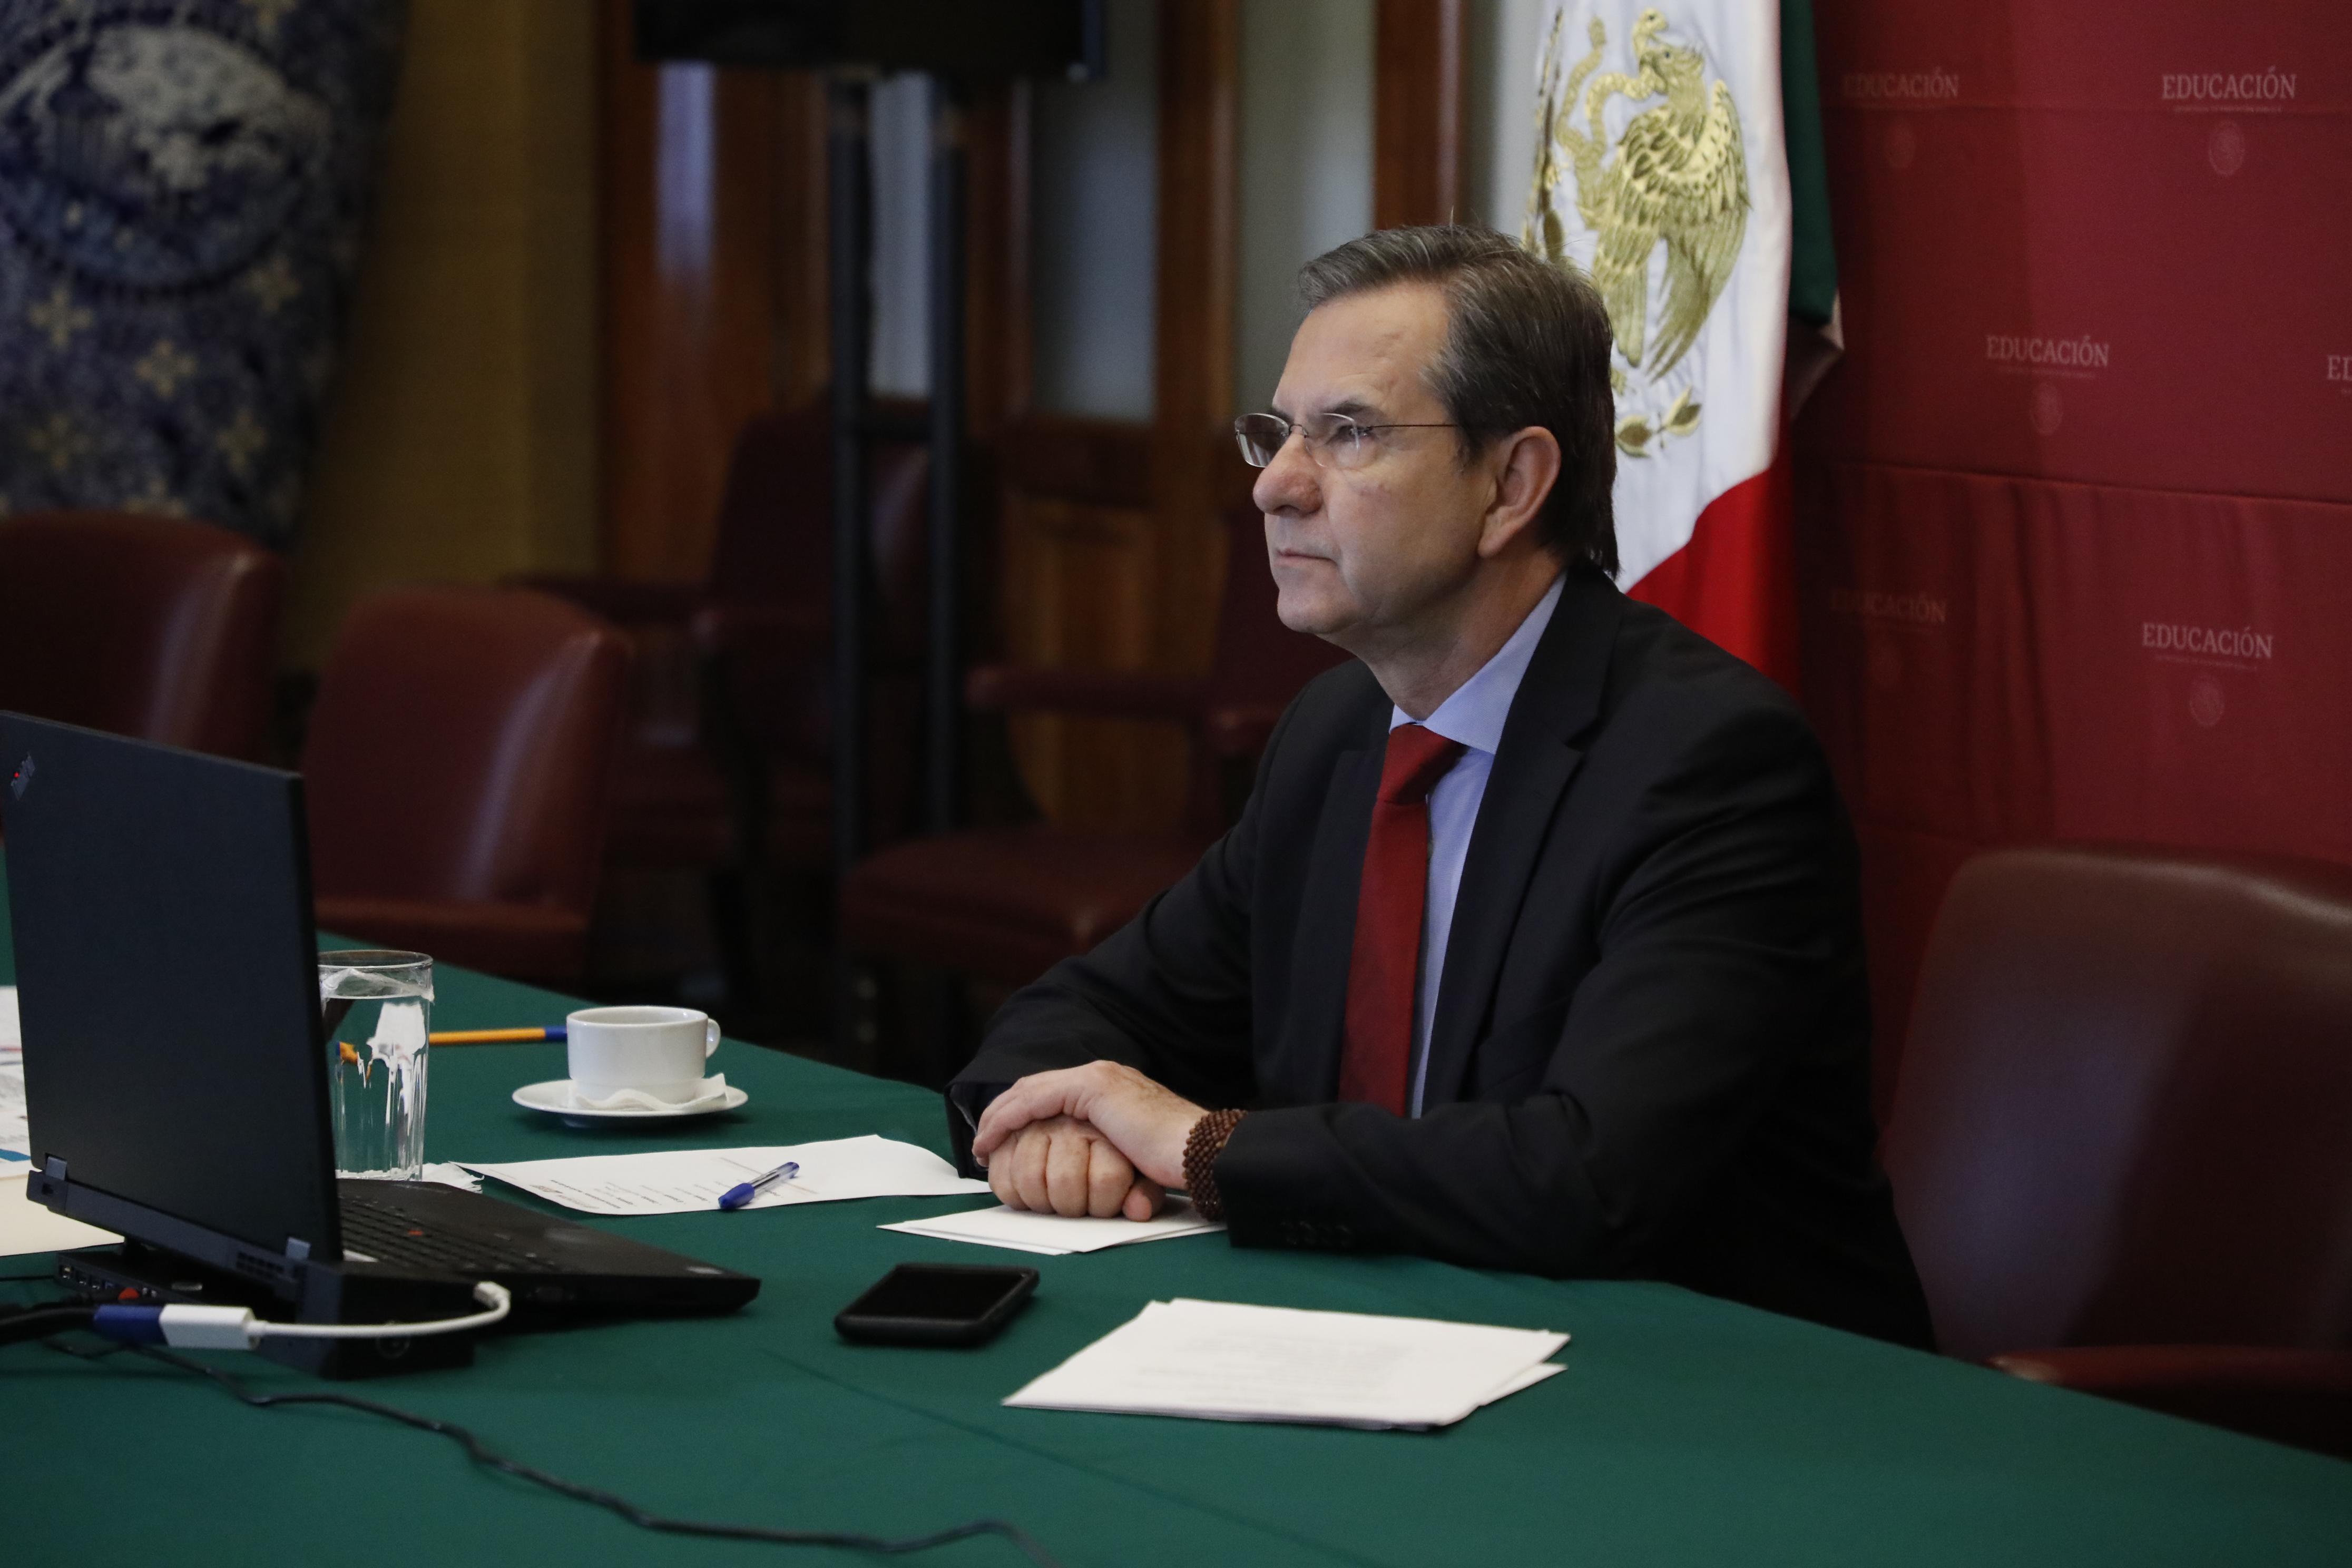 Sostiene Esteban Moctezuma Barragán videoconferencia con Ministros de Educación de Hispanoamérica y España por COVID-19

